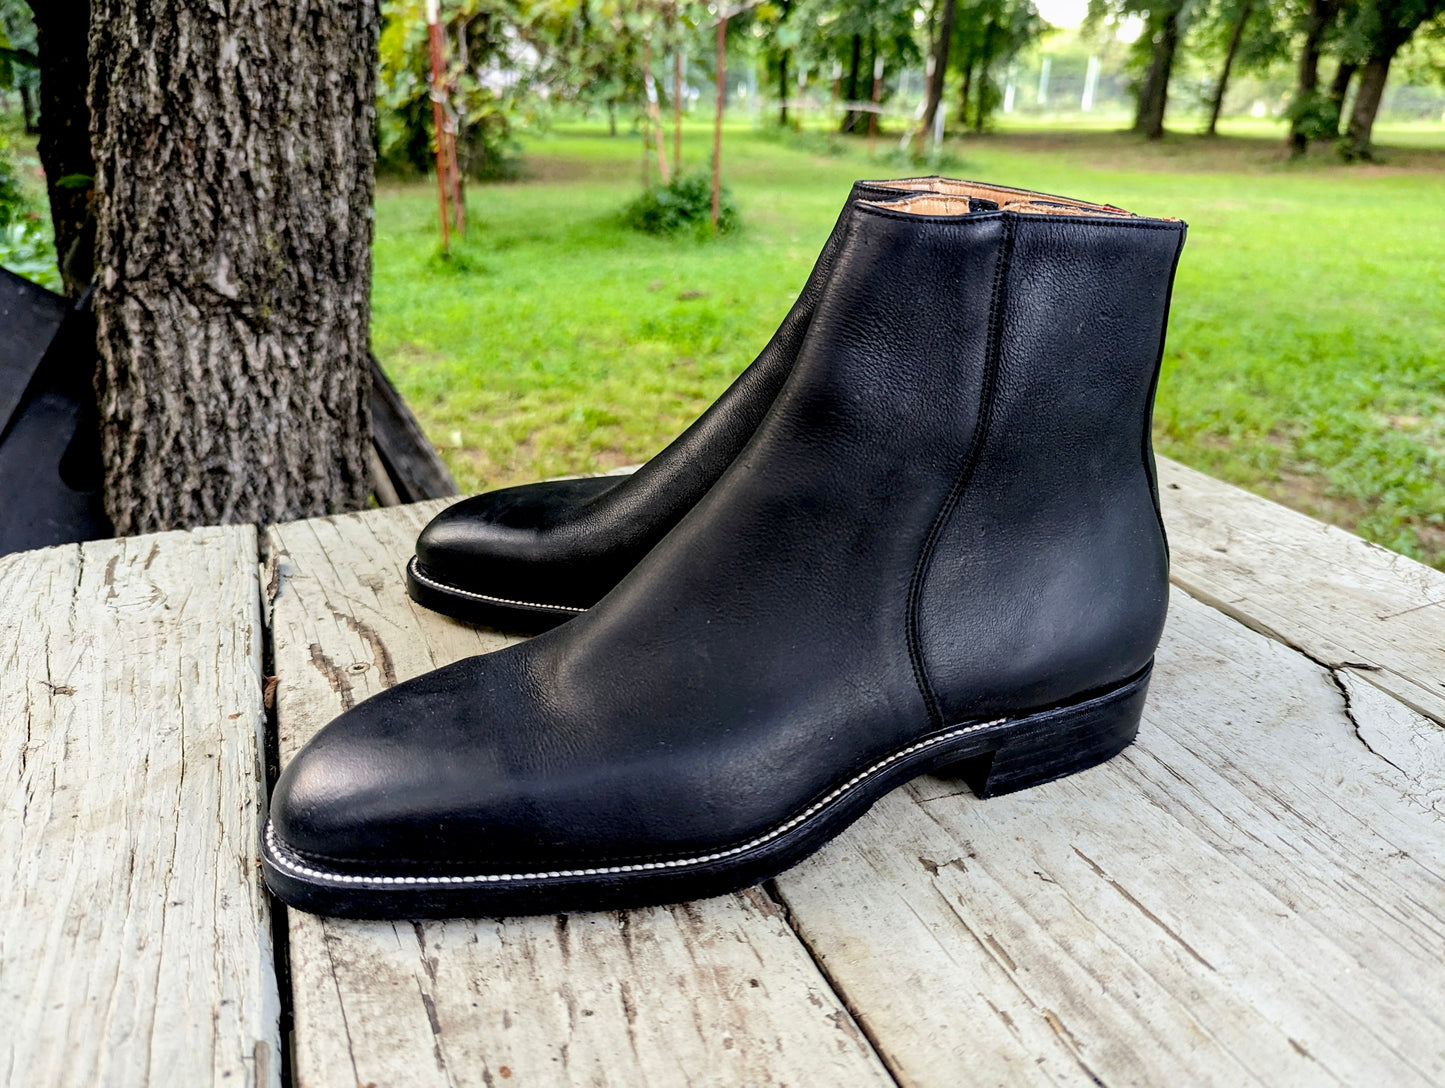 Bliskavka Zip Up Boot Black Kudu, Size 11